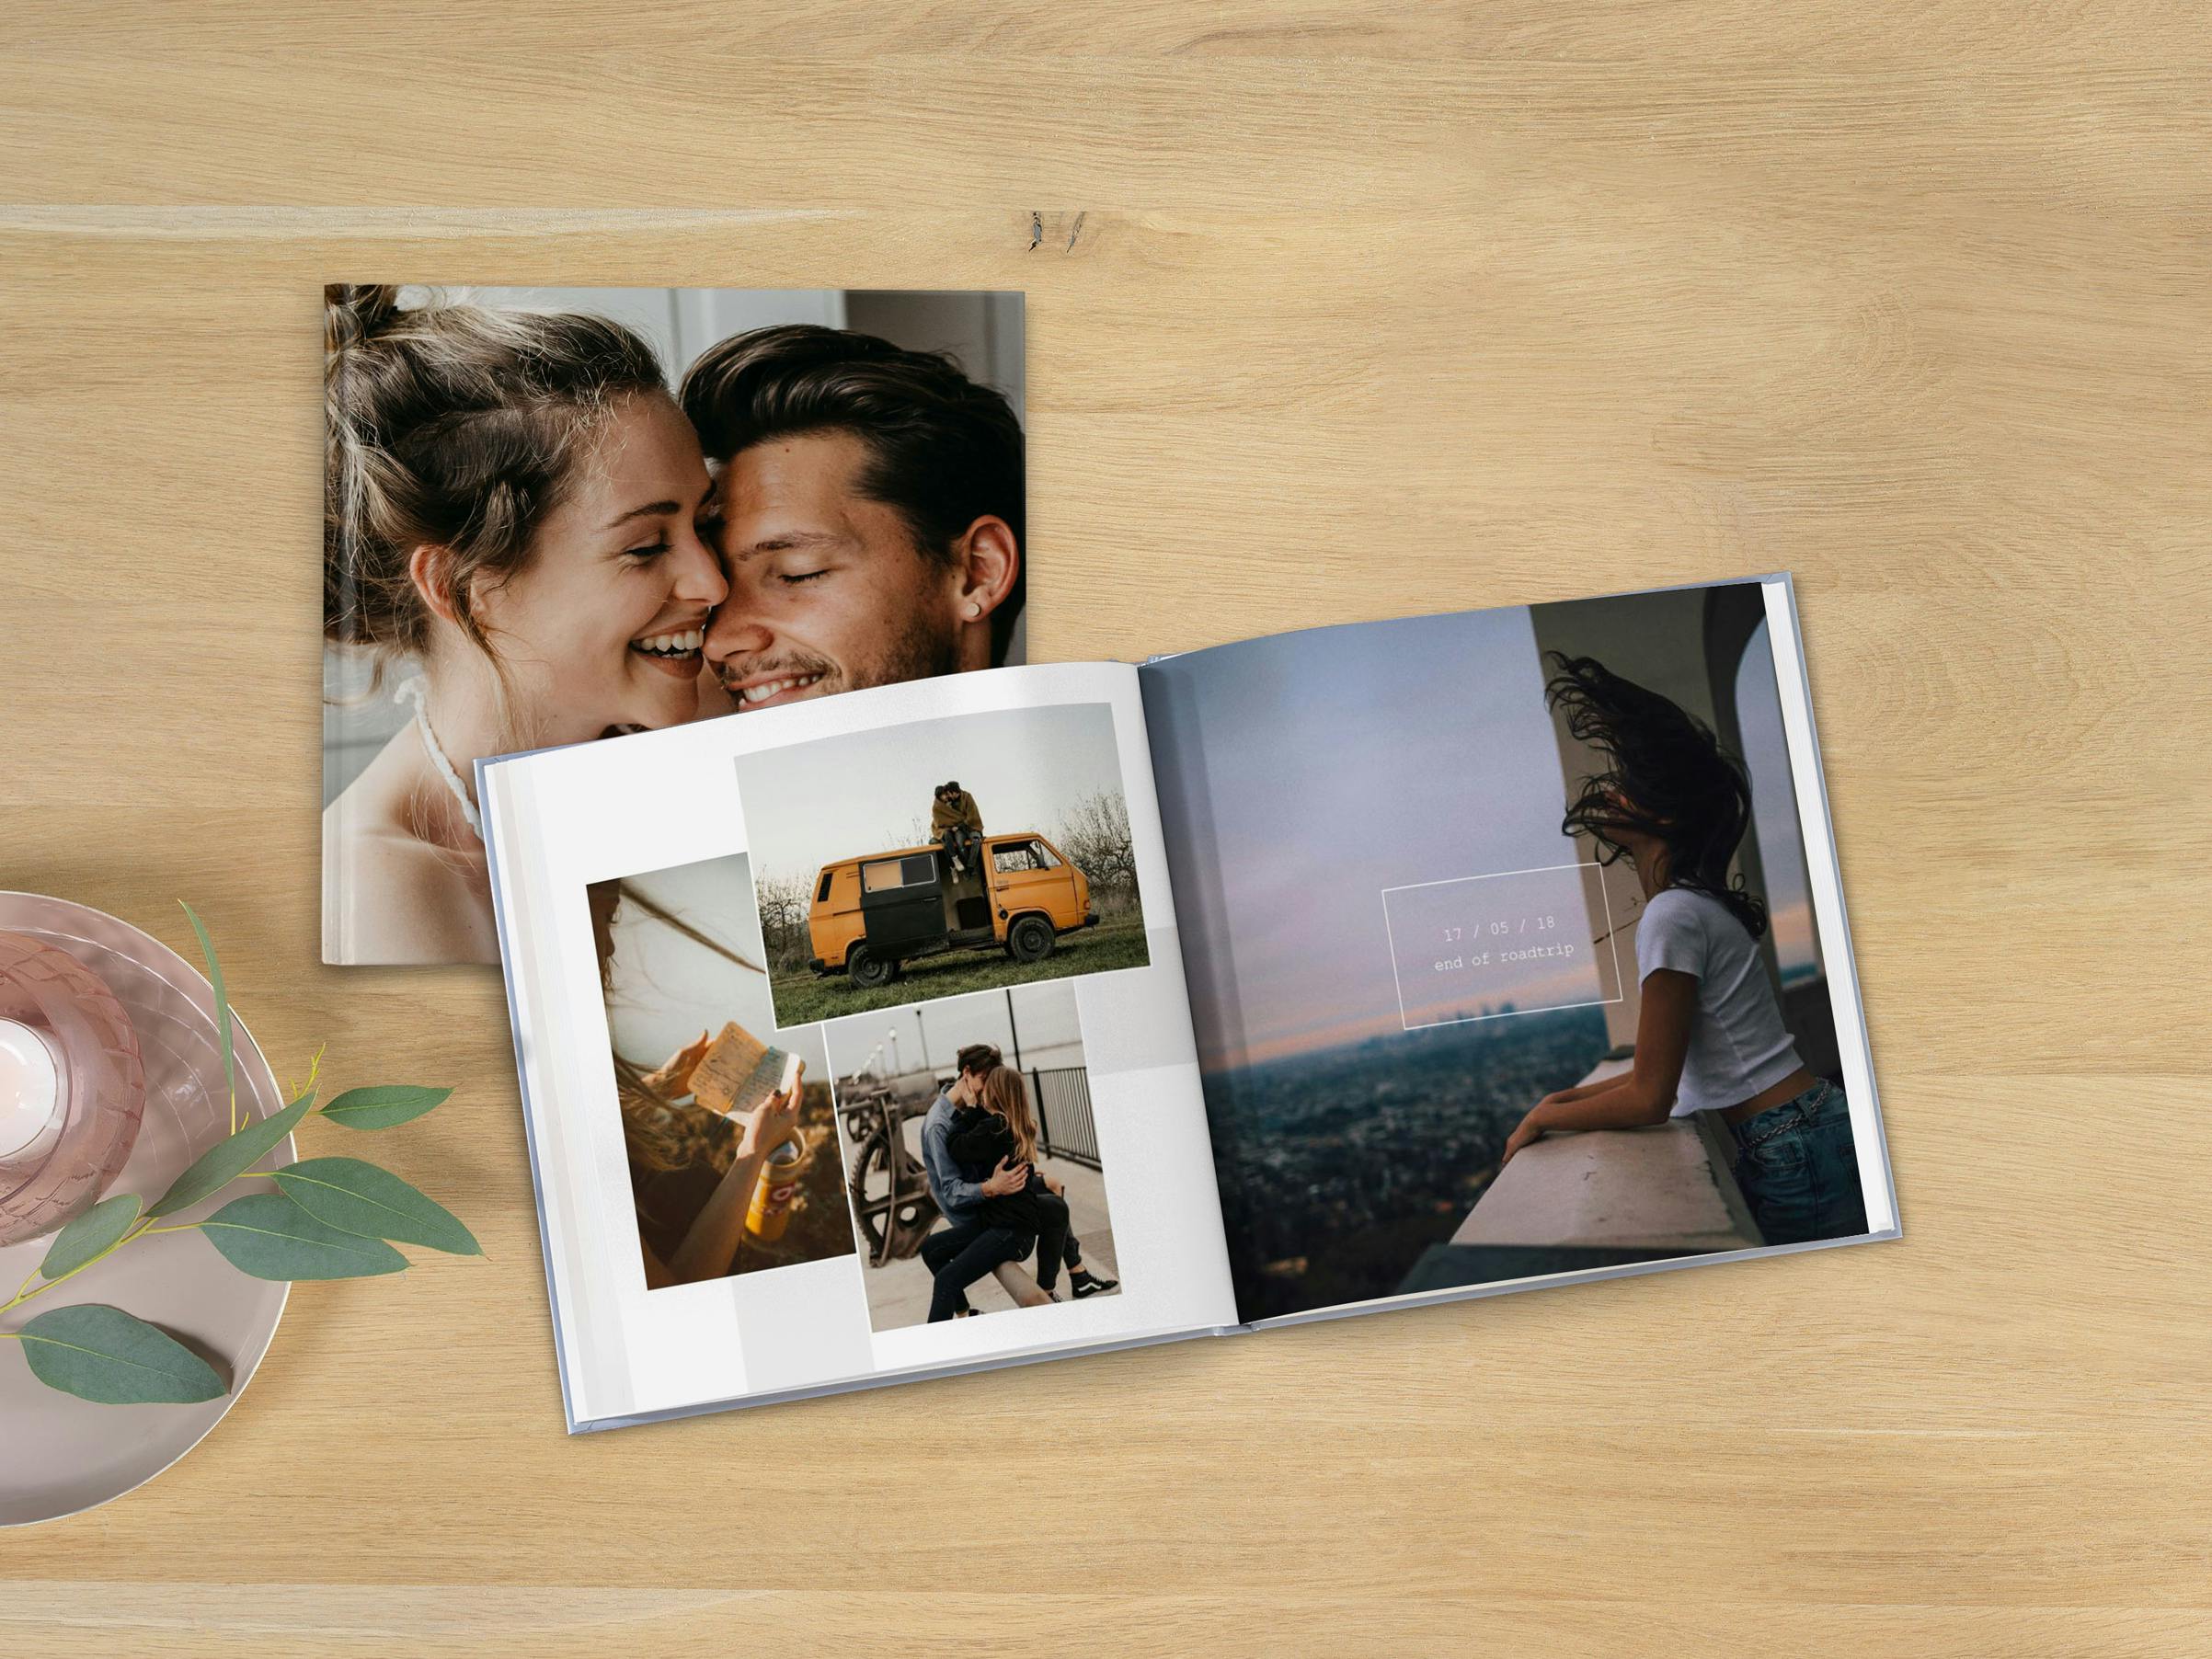 Álbum de fotos cuadrado con fotos de una pareja en diseños modernos sobre una mesa de madera